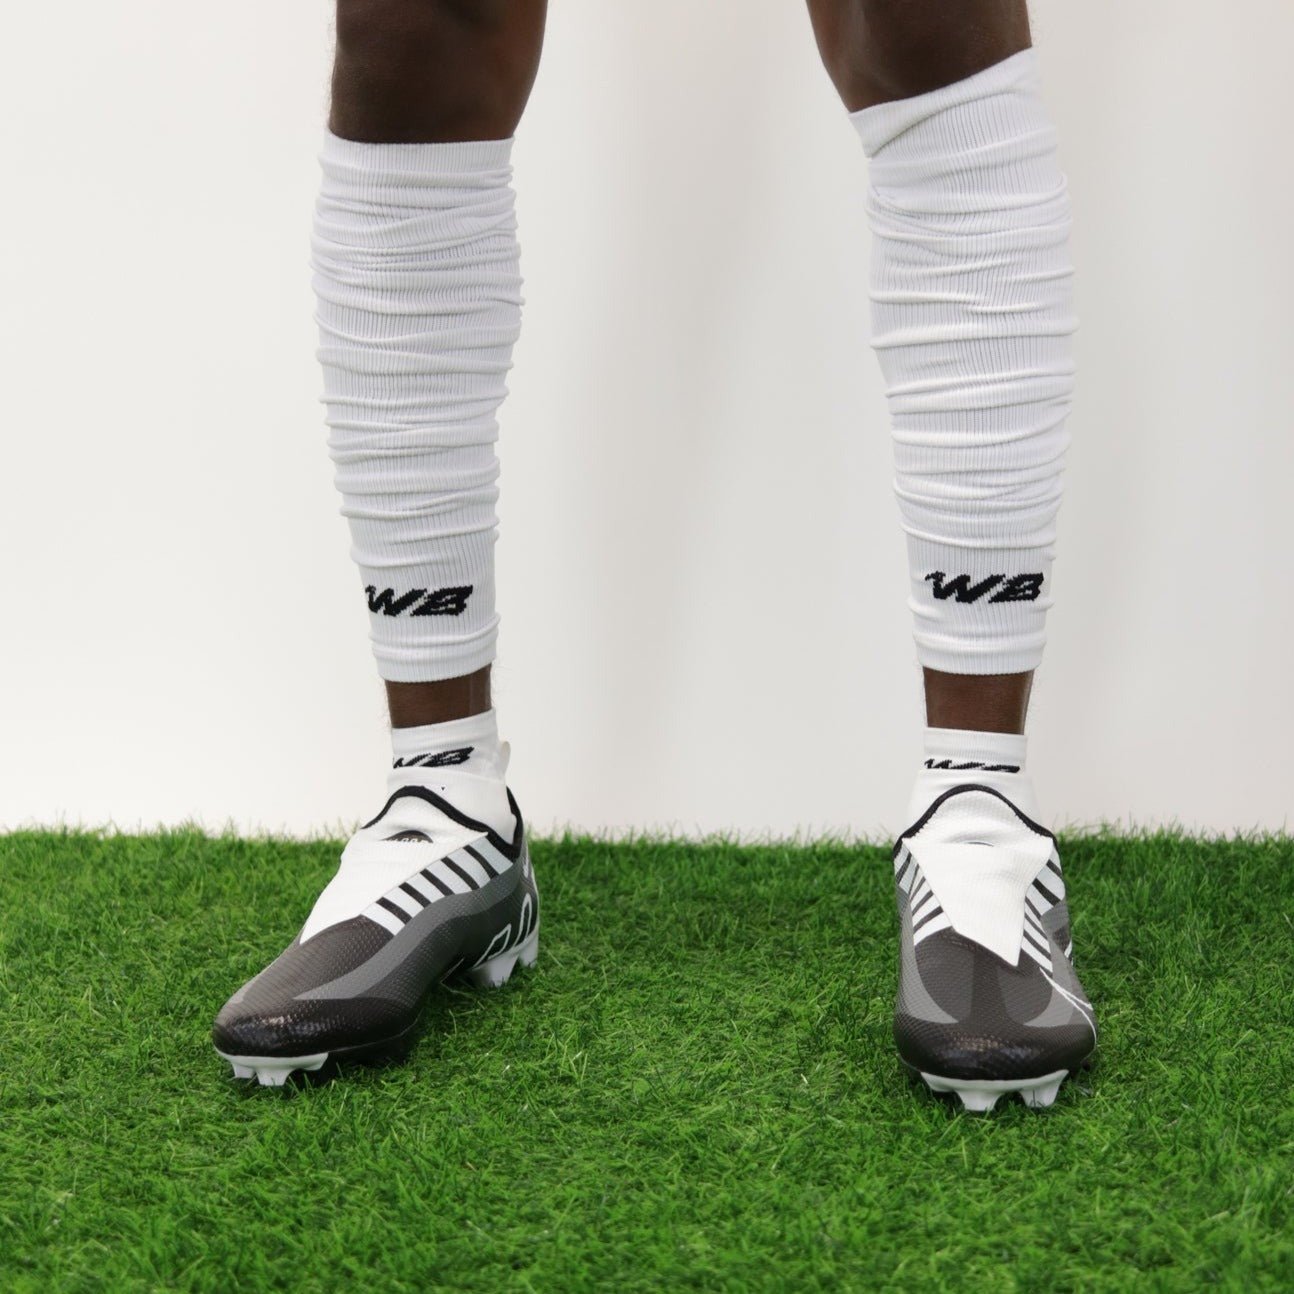 Nike Breaking 2 Sleeves Unisex Running Arm Sleeves – Soccer Sport